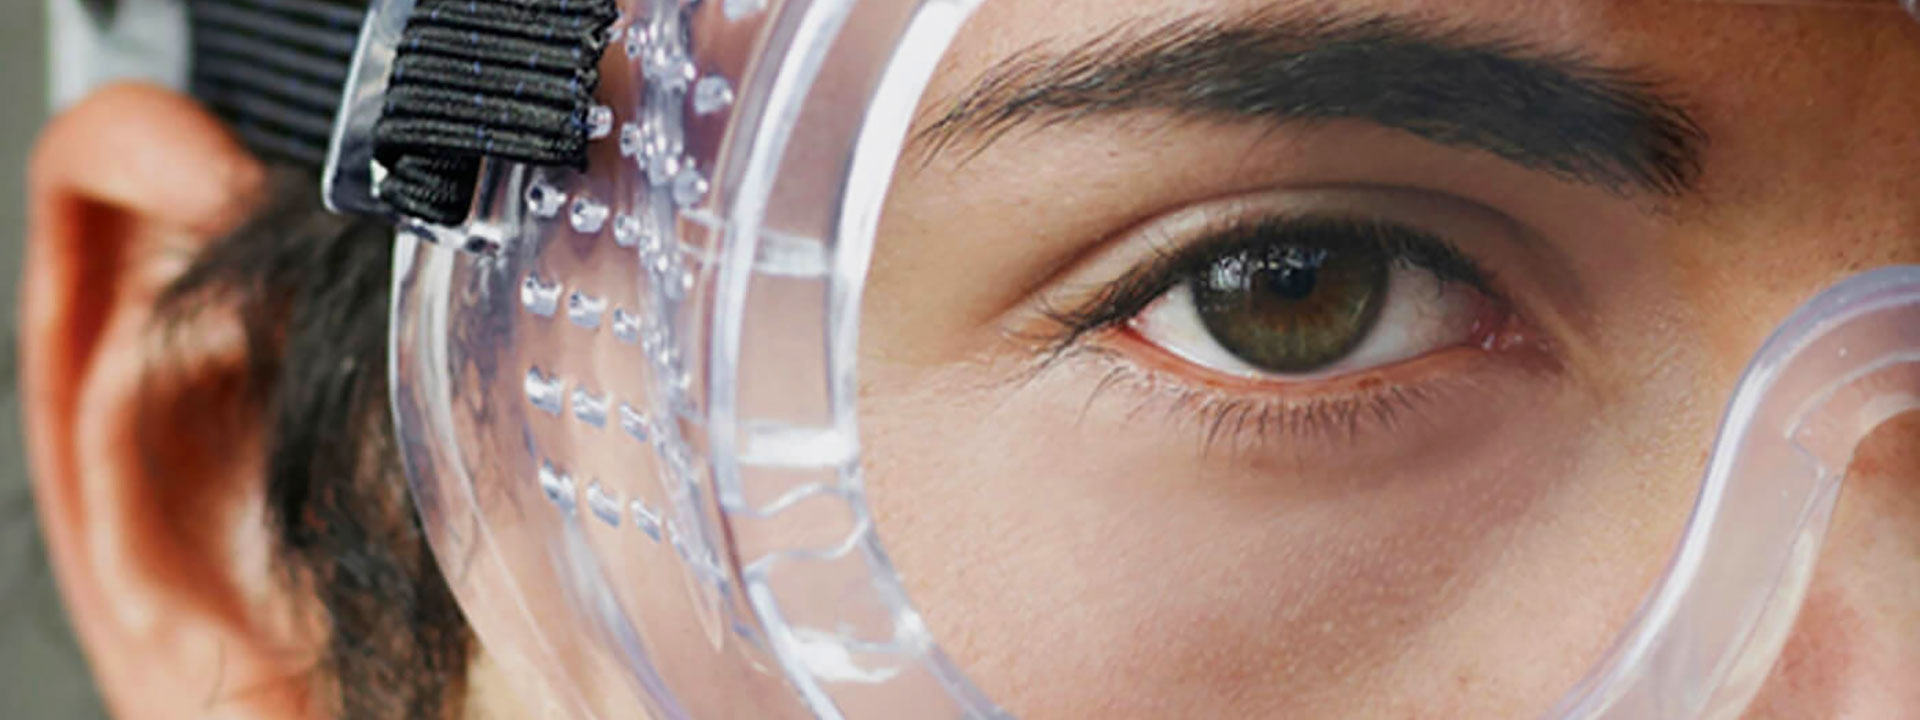 EN 207 Equipo de protección ocular personal: filtros contra la radiación láser y protección ocular (protectores oculares láser)